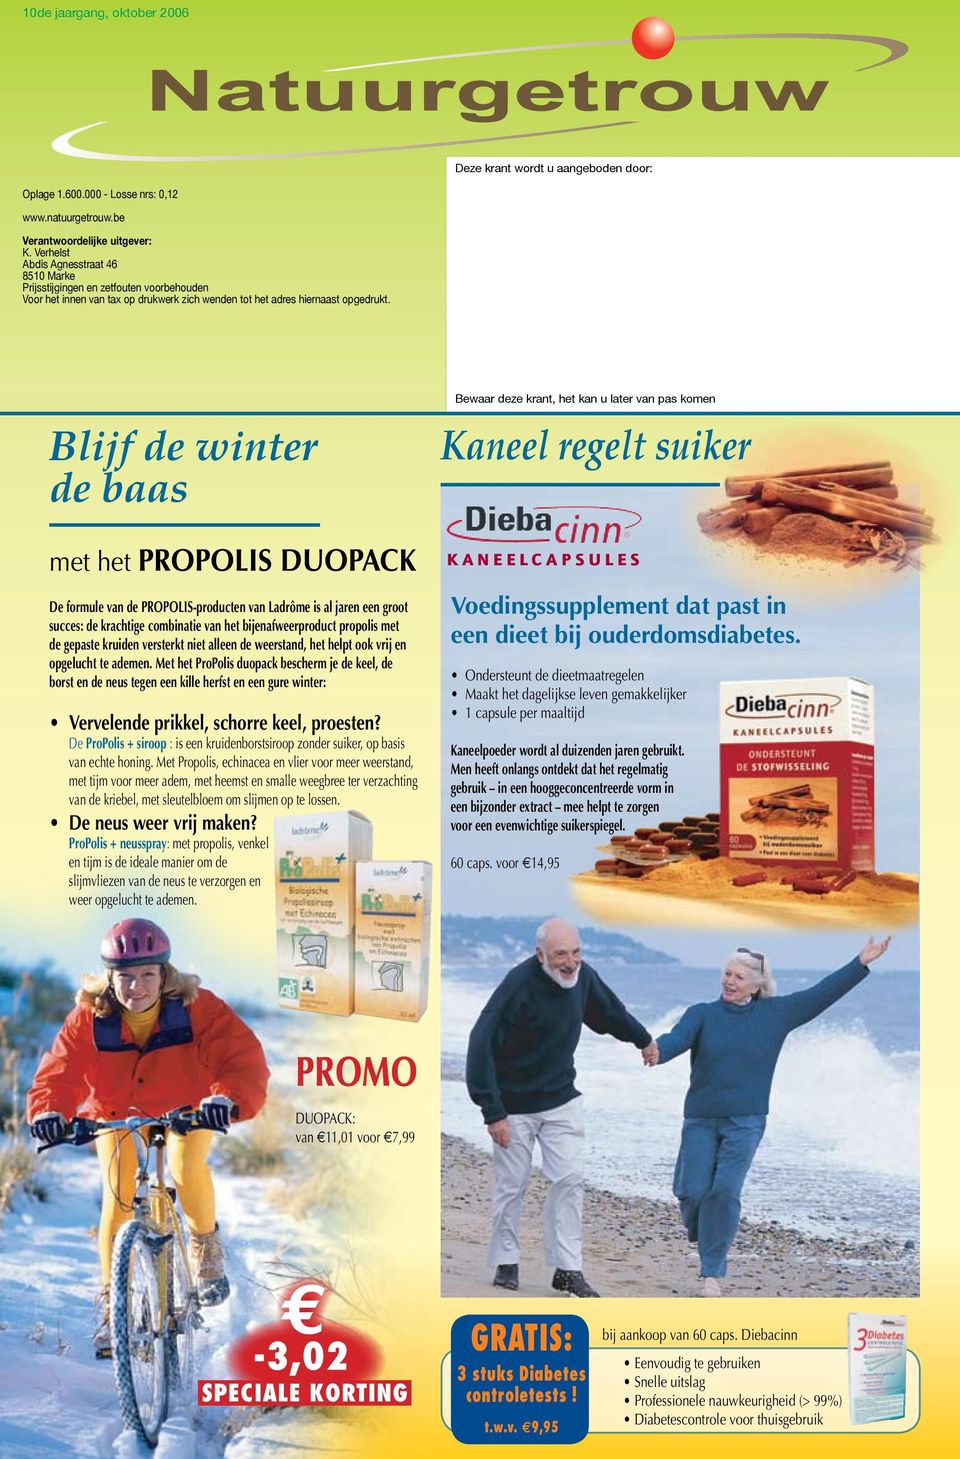 Blijf de winter de baas Bewaar deze krant, het kan u later van pas komen Kaneel regelt suiker met het PRPLIS DUPACK De formule van de PRPLIS-producten van Ladrôme is al jaren een groot succes: de